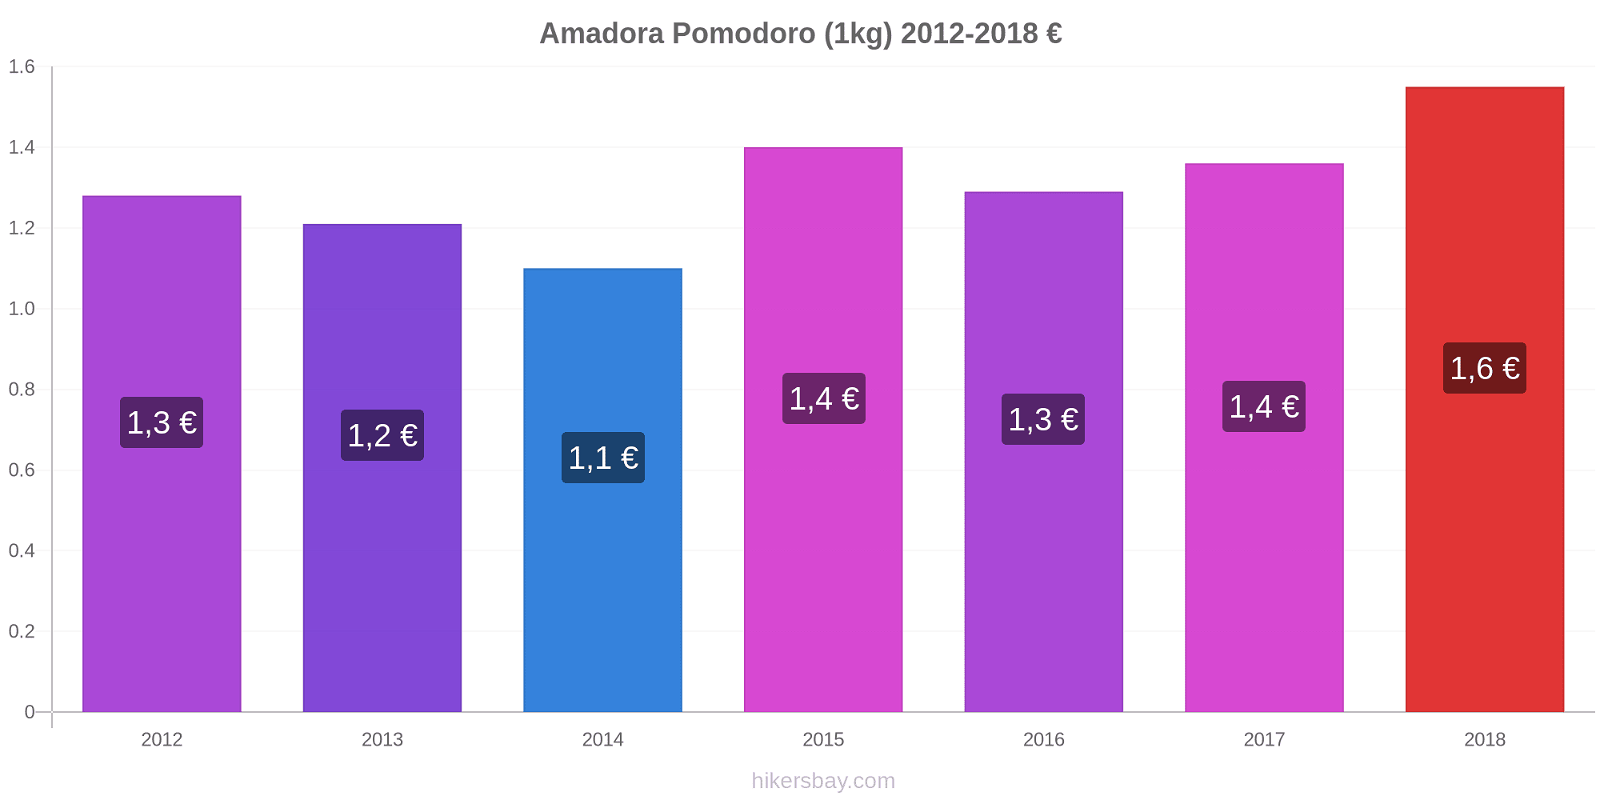 Amadora variazioni di prezzo Pomodoro (1kg) hikersbay.com